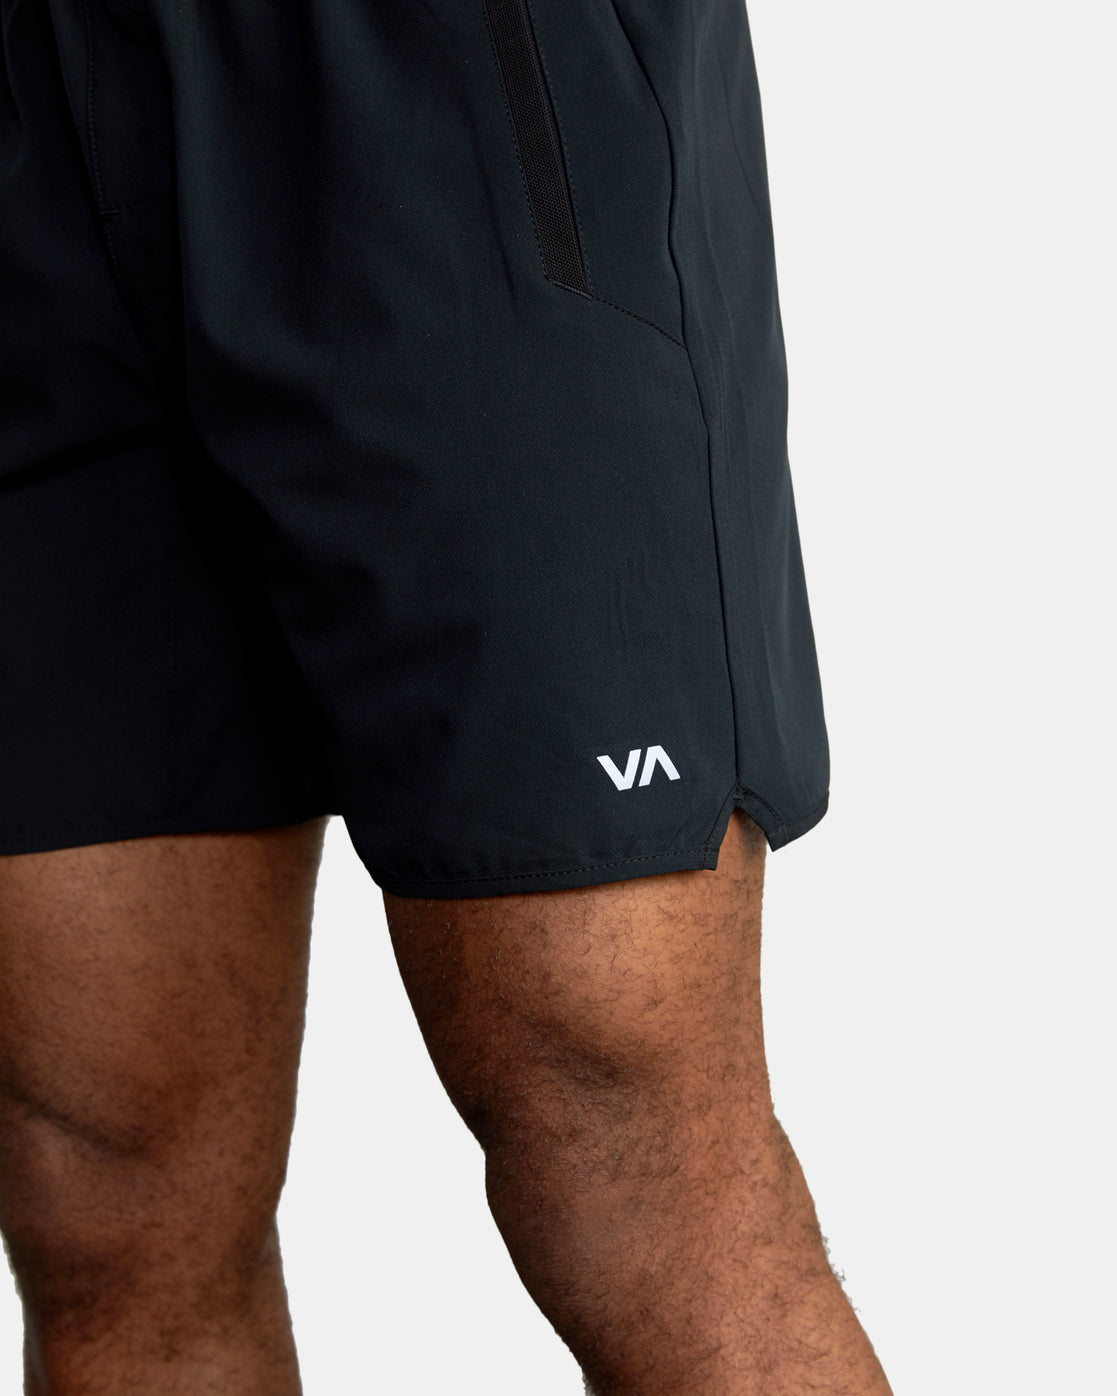 RVCA Yogger Stretch Elastic 17" Shorts